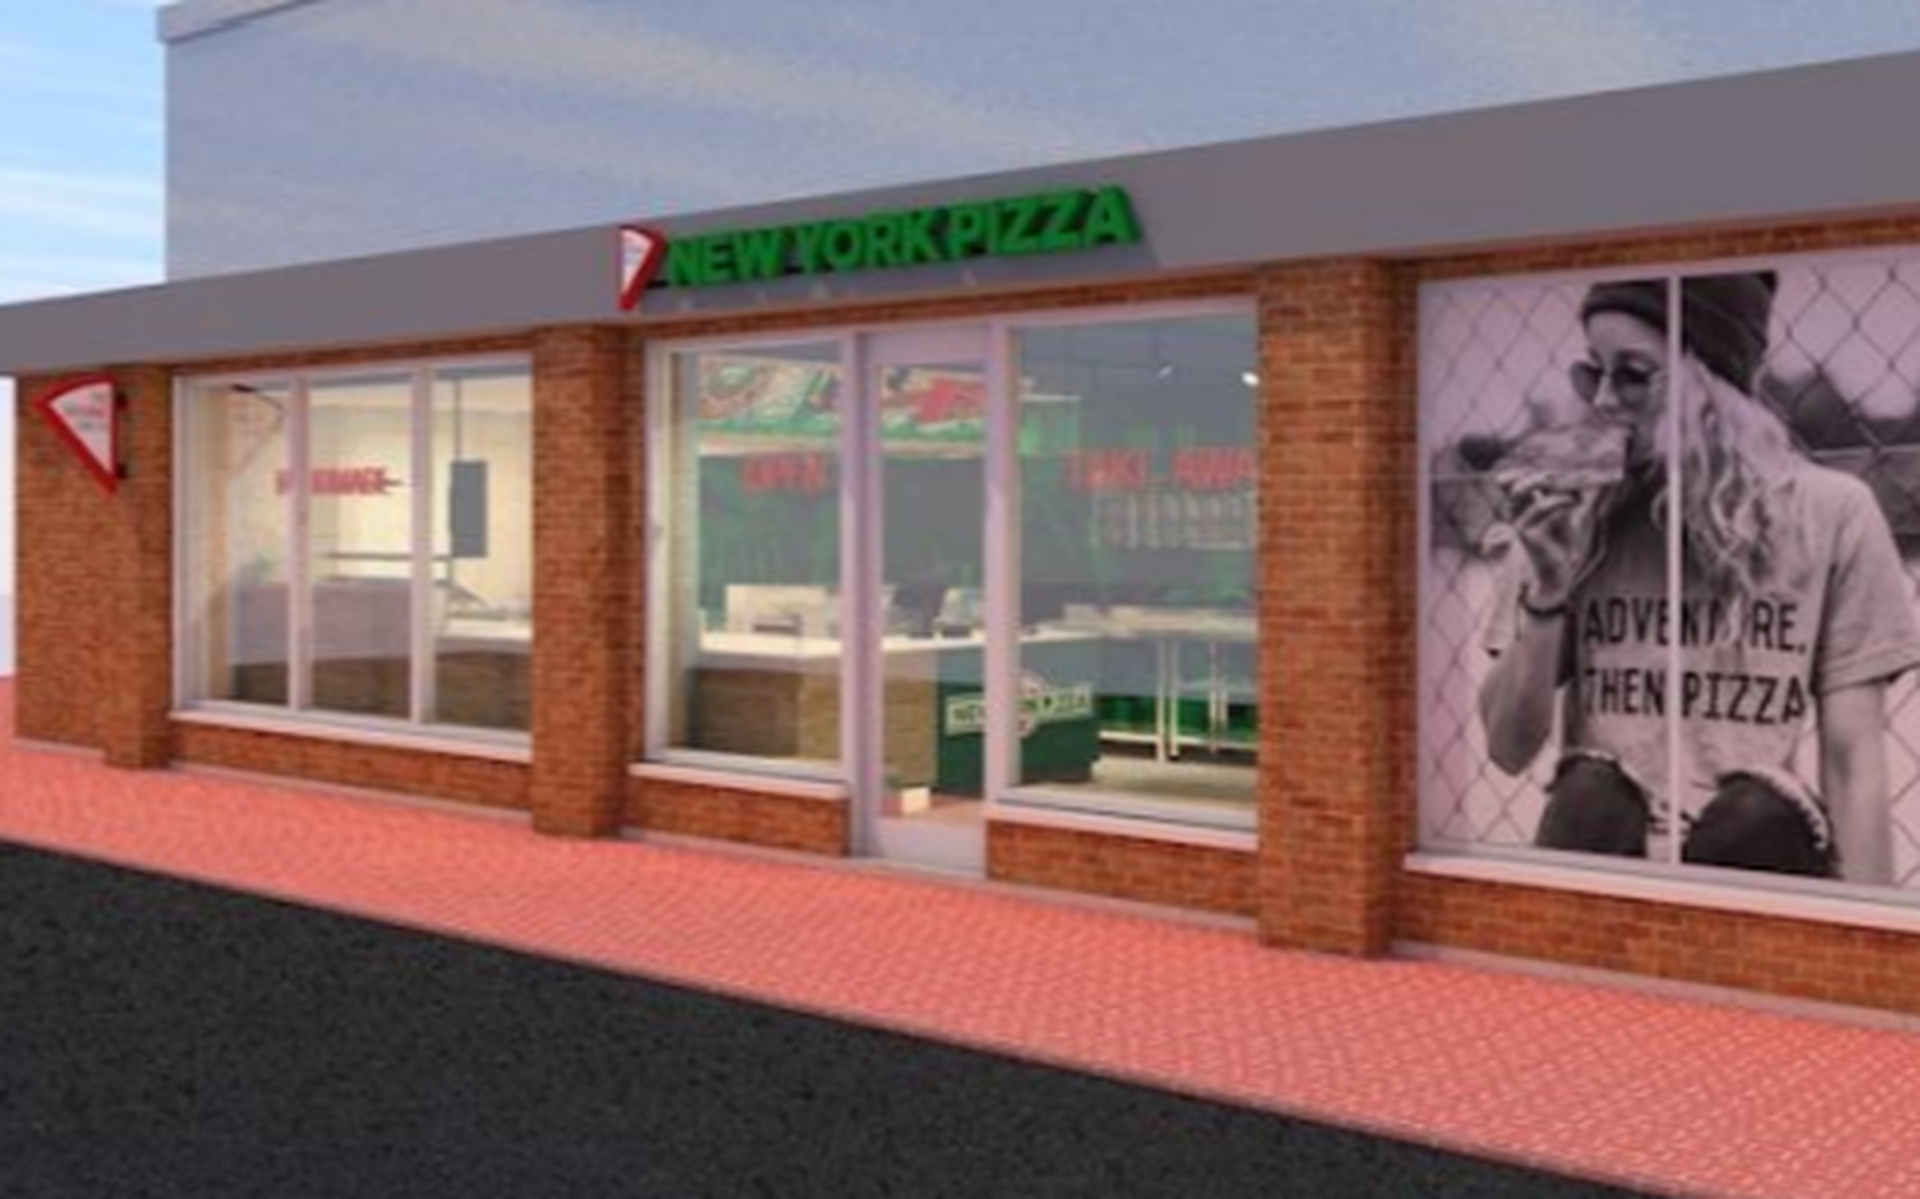 New York Pizza opent vestiging aan het aan het Beneden Oosterdiep 165 in Veendam (Autorama).